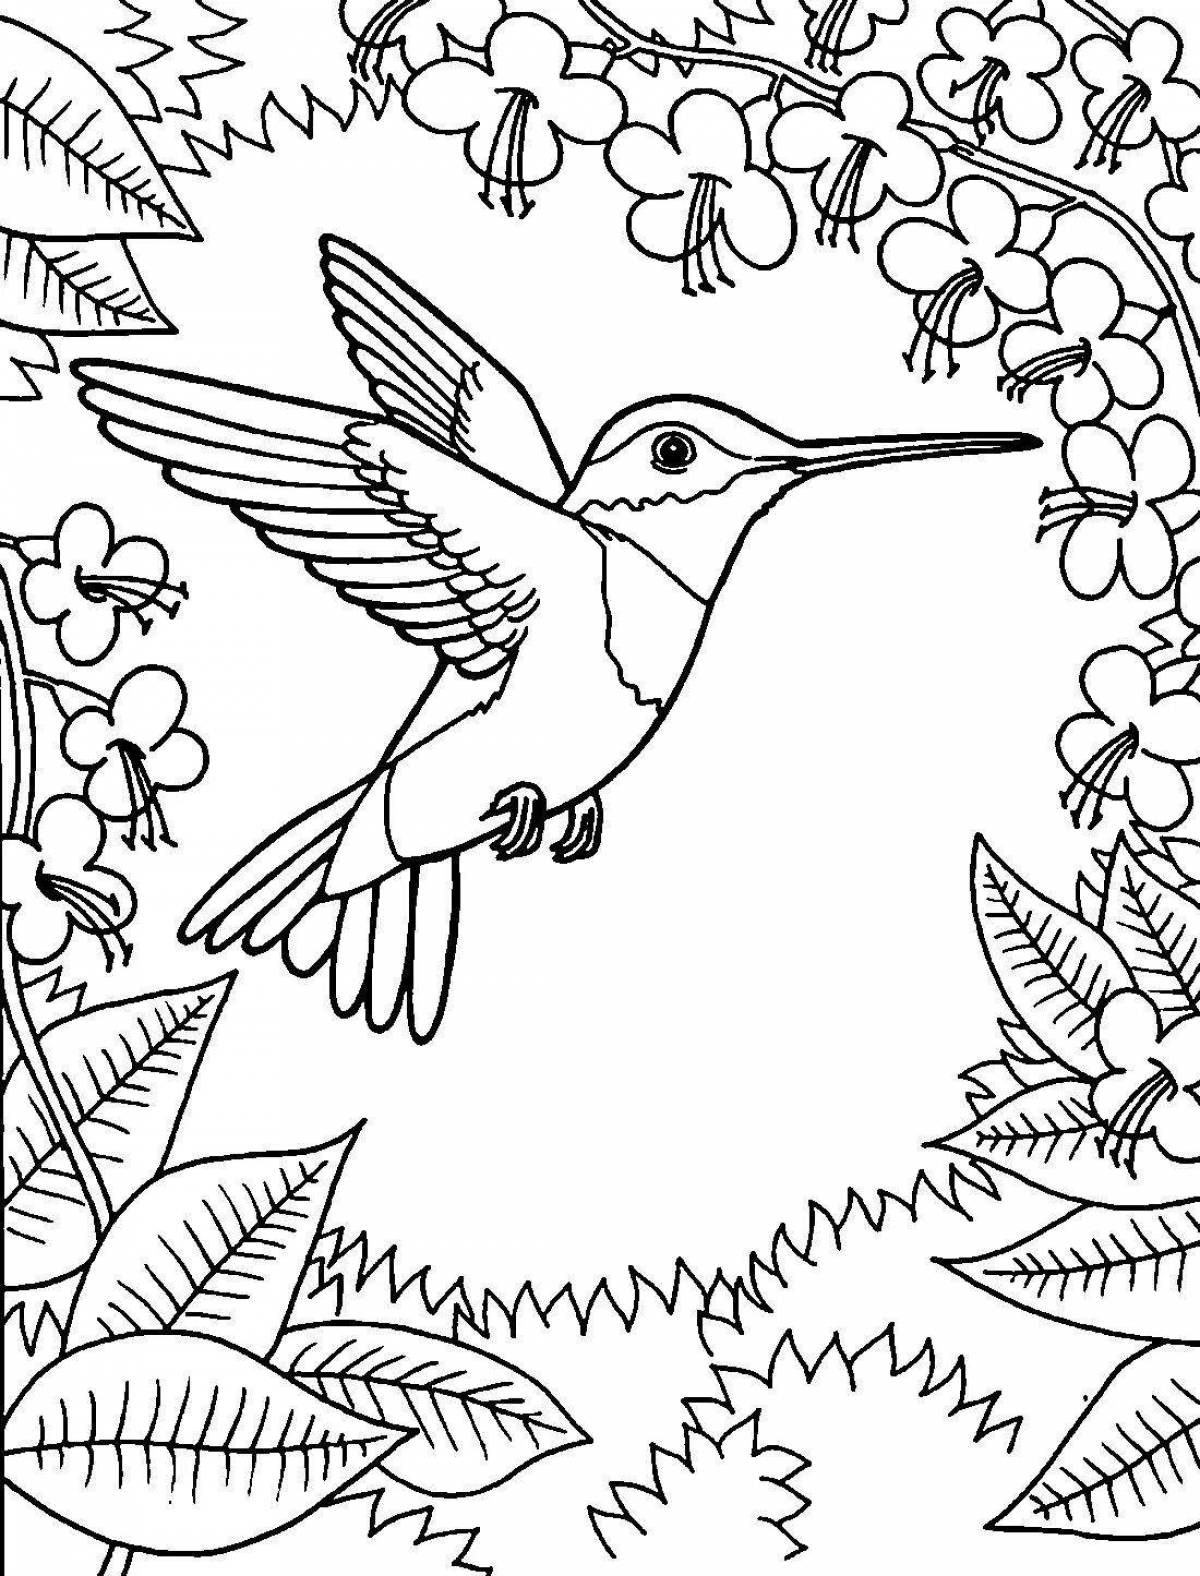 Fascinating hummingbird coloring book for kids